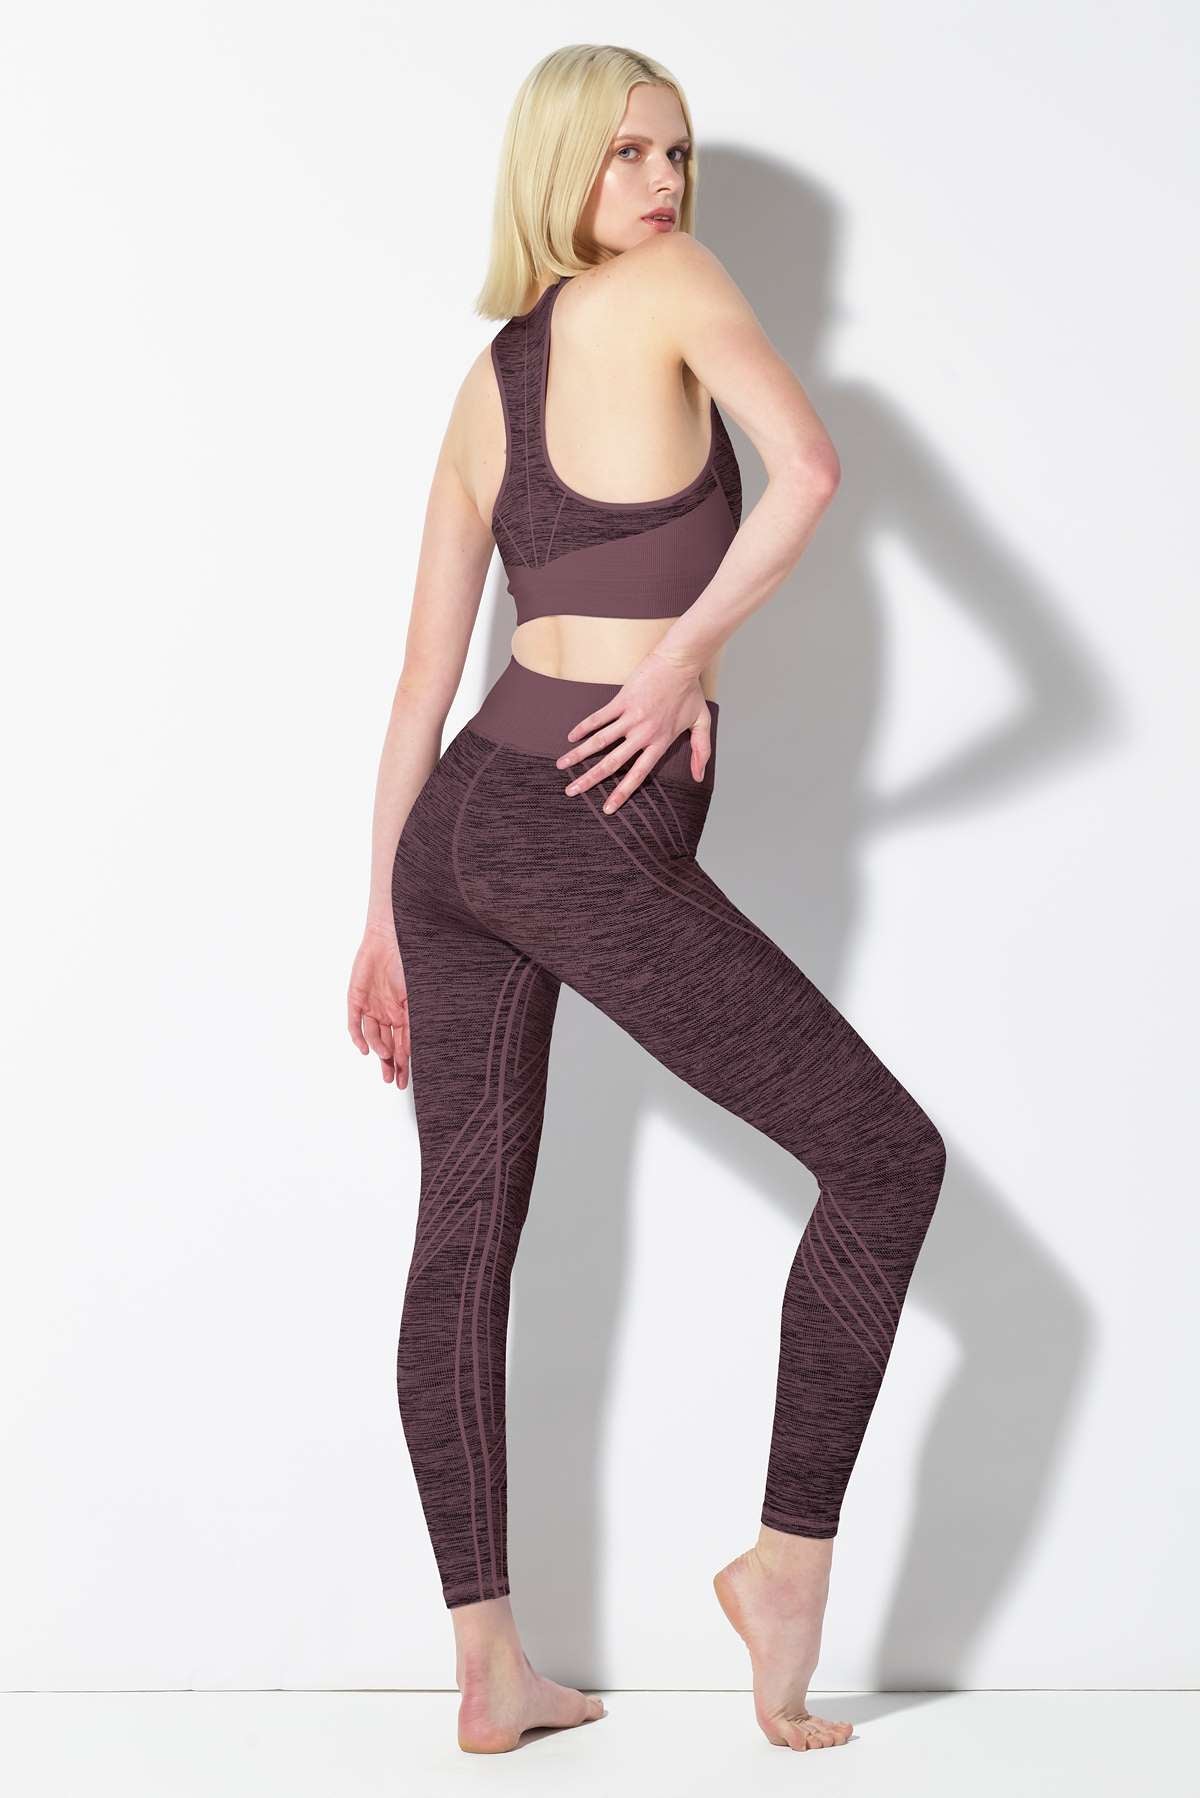 Victoria Secret PINK Seamless Workout Tight High Waist Leggings Cinnibar  Size S